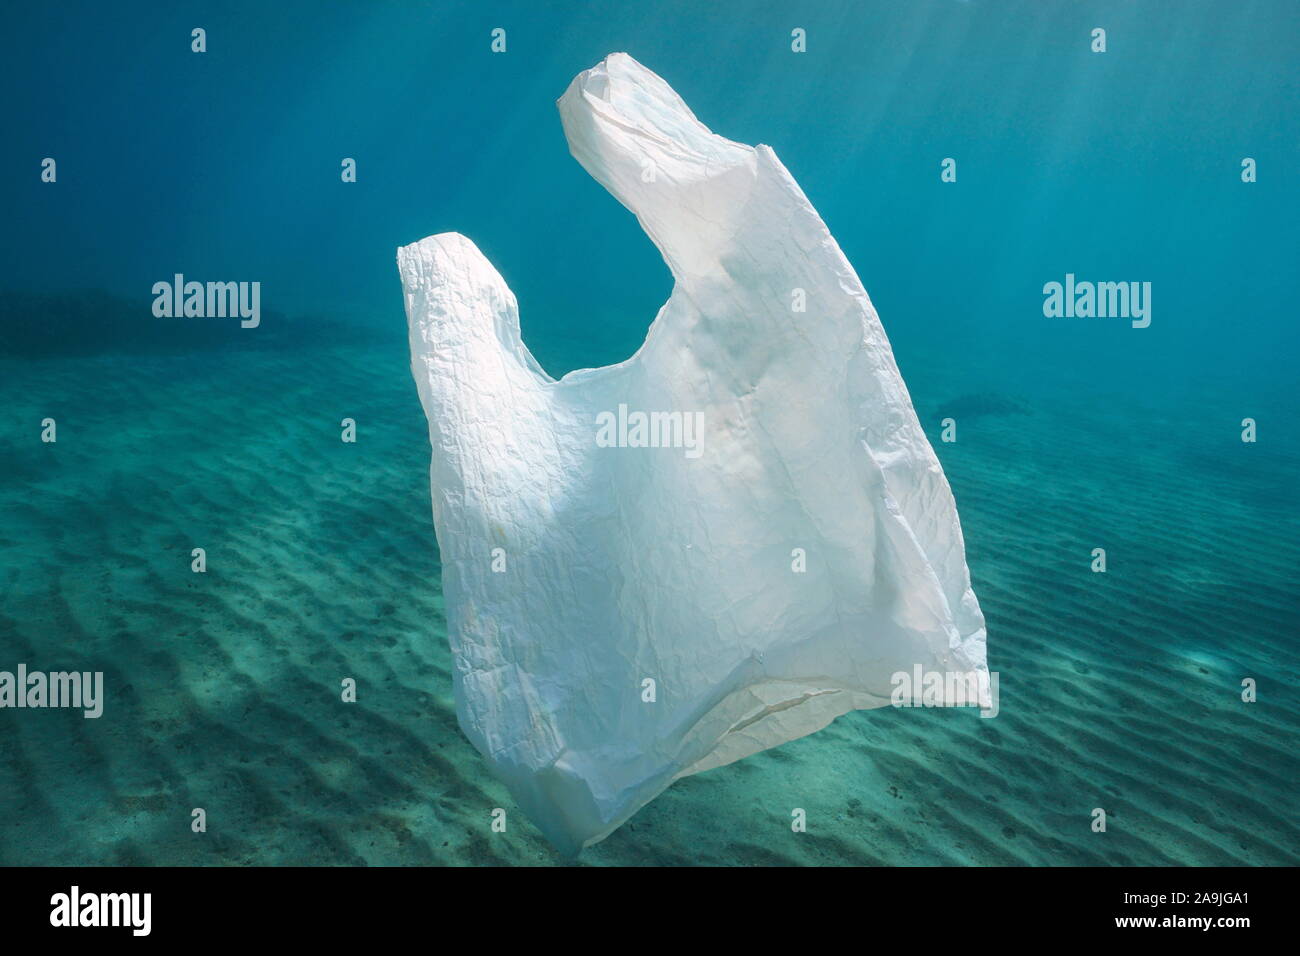 Inquinamento di plastica, un bianco il sacchetto in plastica sott'acqua nell'oceano Foto Stock